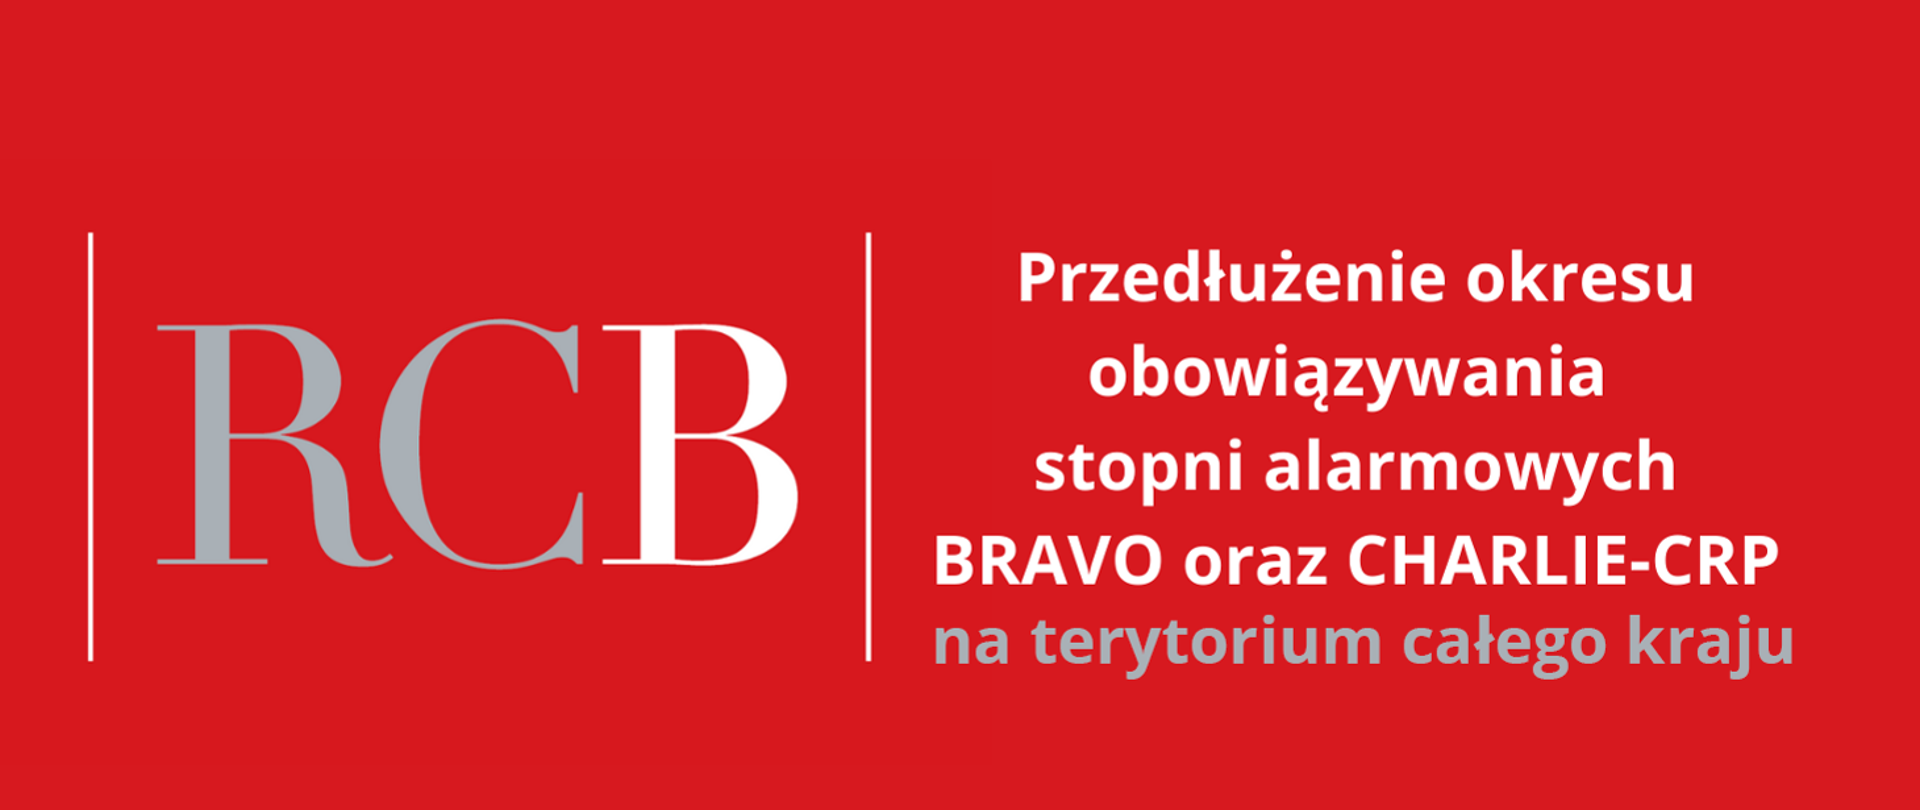 Informacja umieszczona na czerwonym tle zawierająca skrót RCB oraz tekst: Przedłużenie okresu obowiązywania stopni alarmowych BRAVO oraz CHARLIE-CRP na terytorium całego kraju.